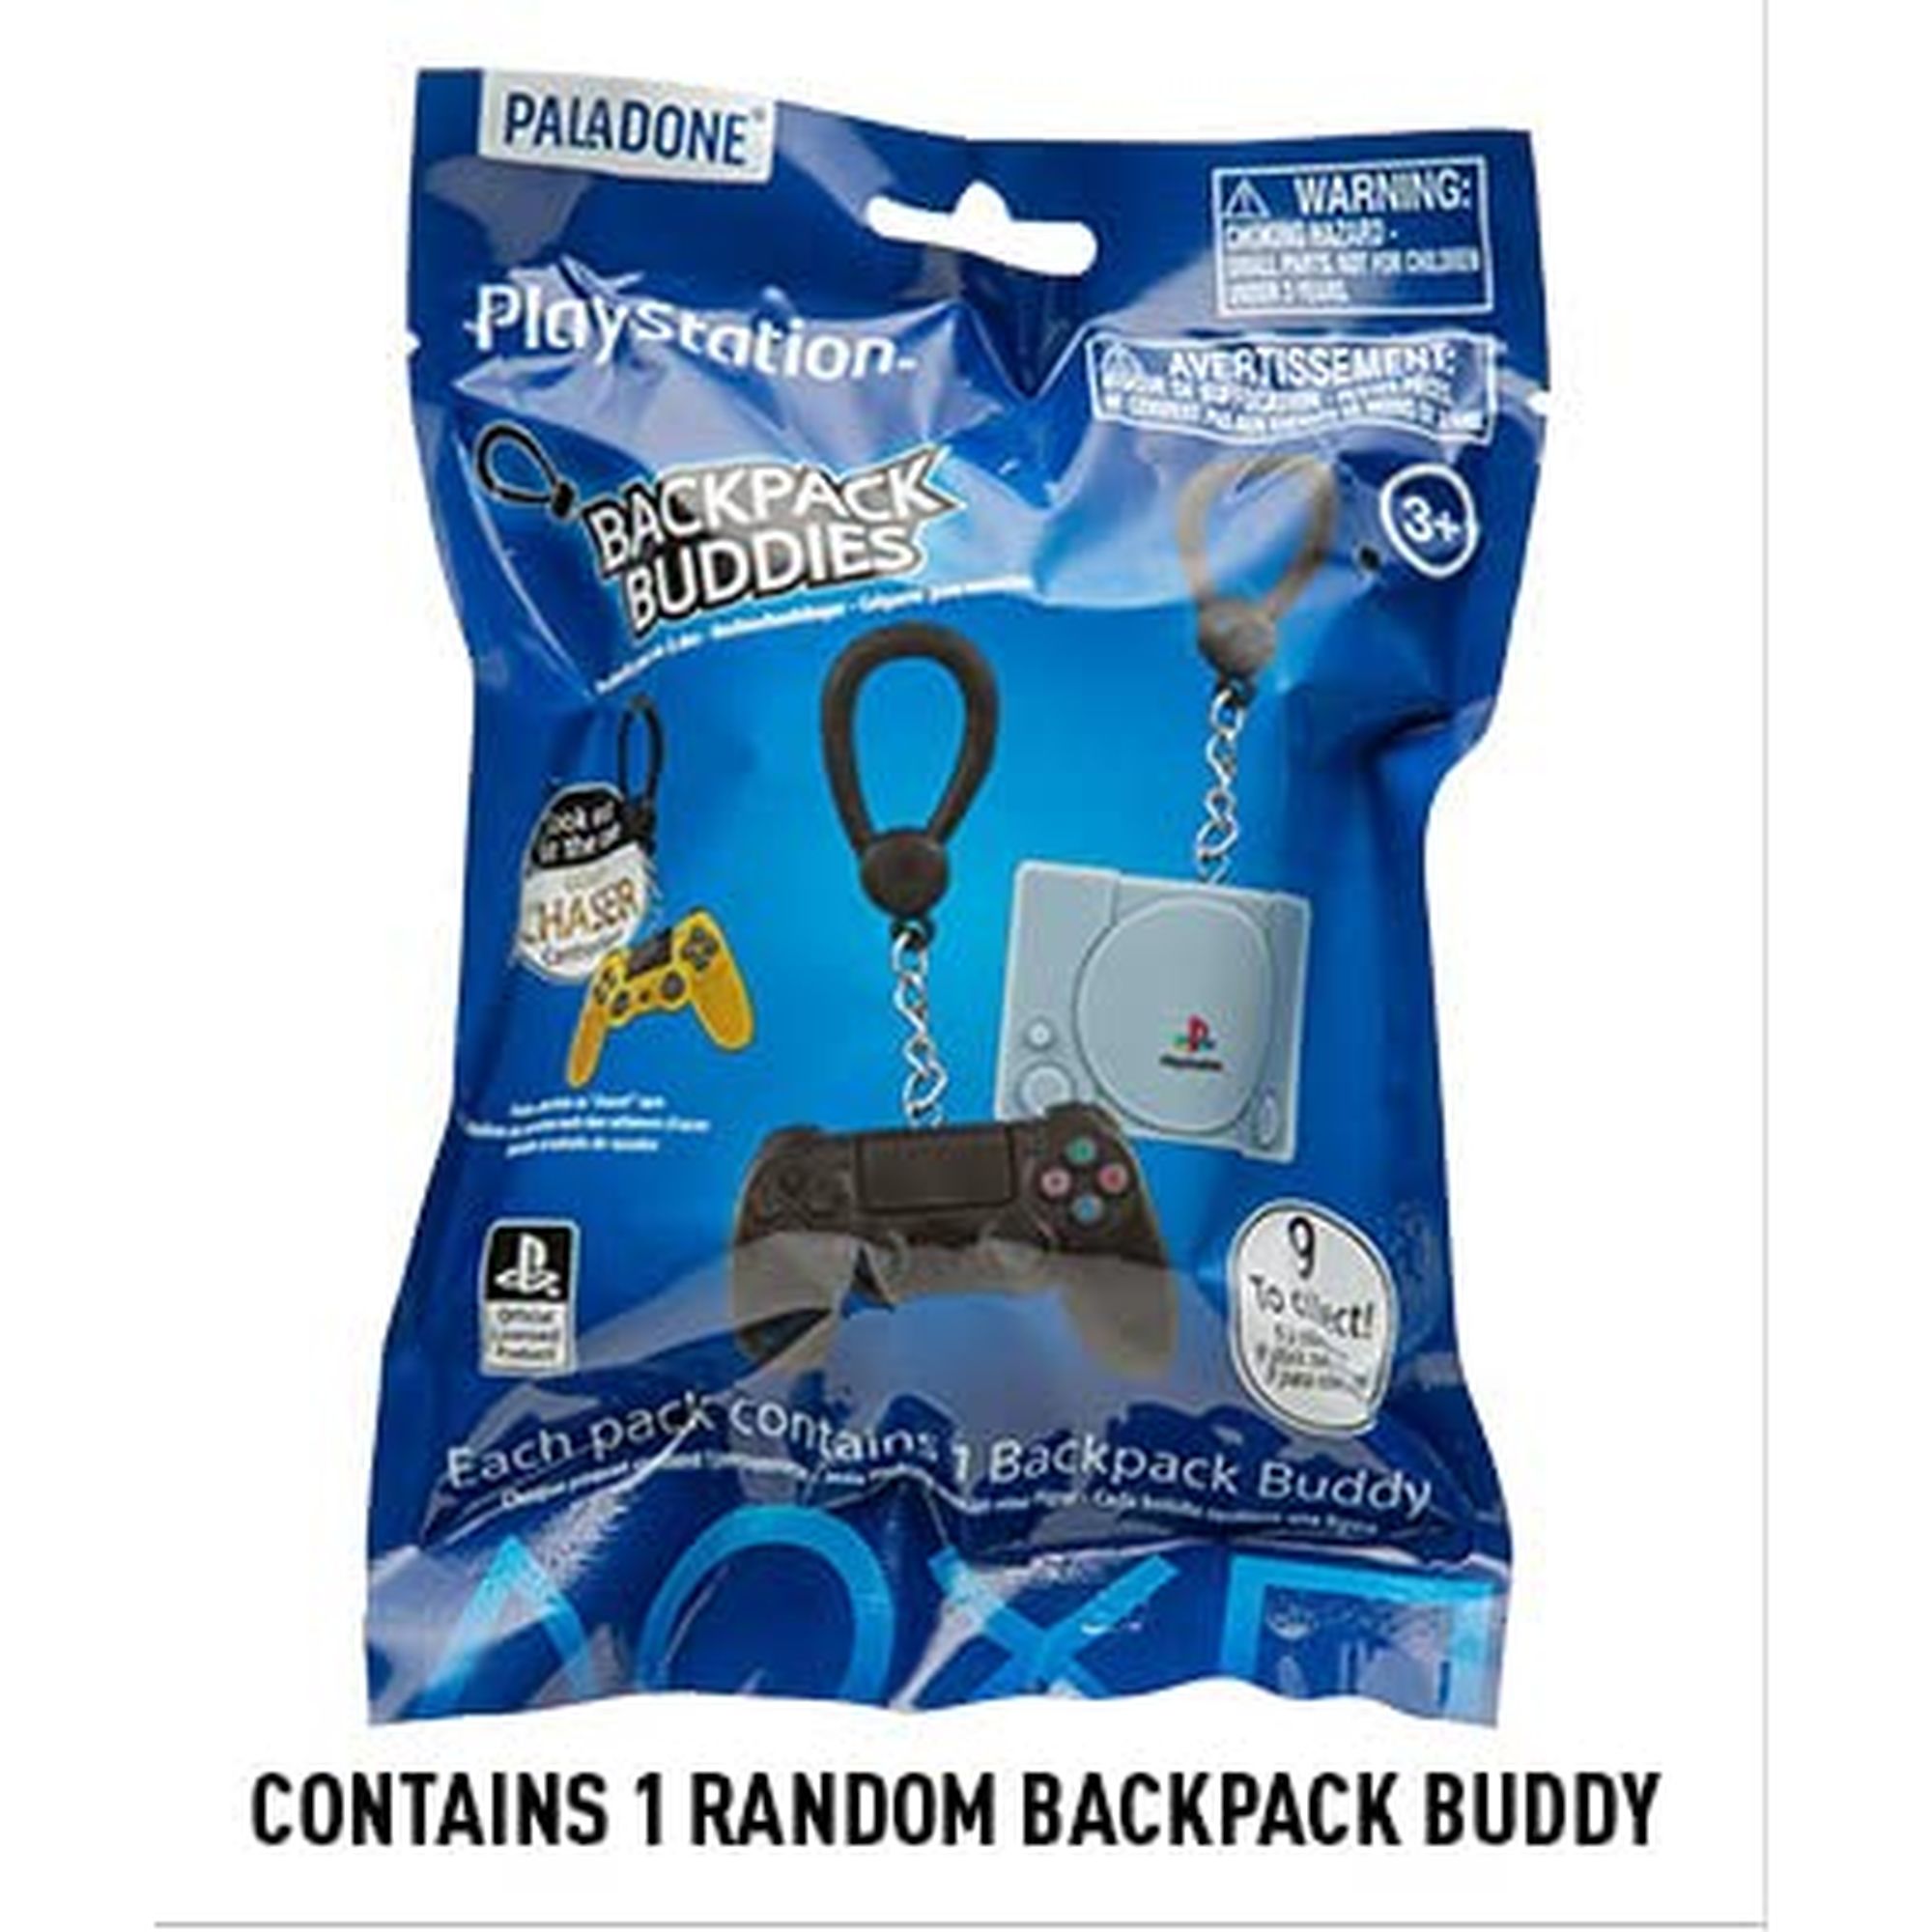 Games Baba Paladone PlayStation Backpack Buddies